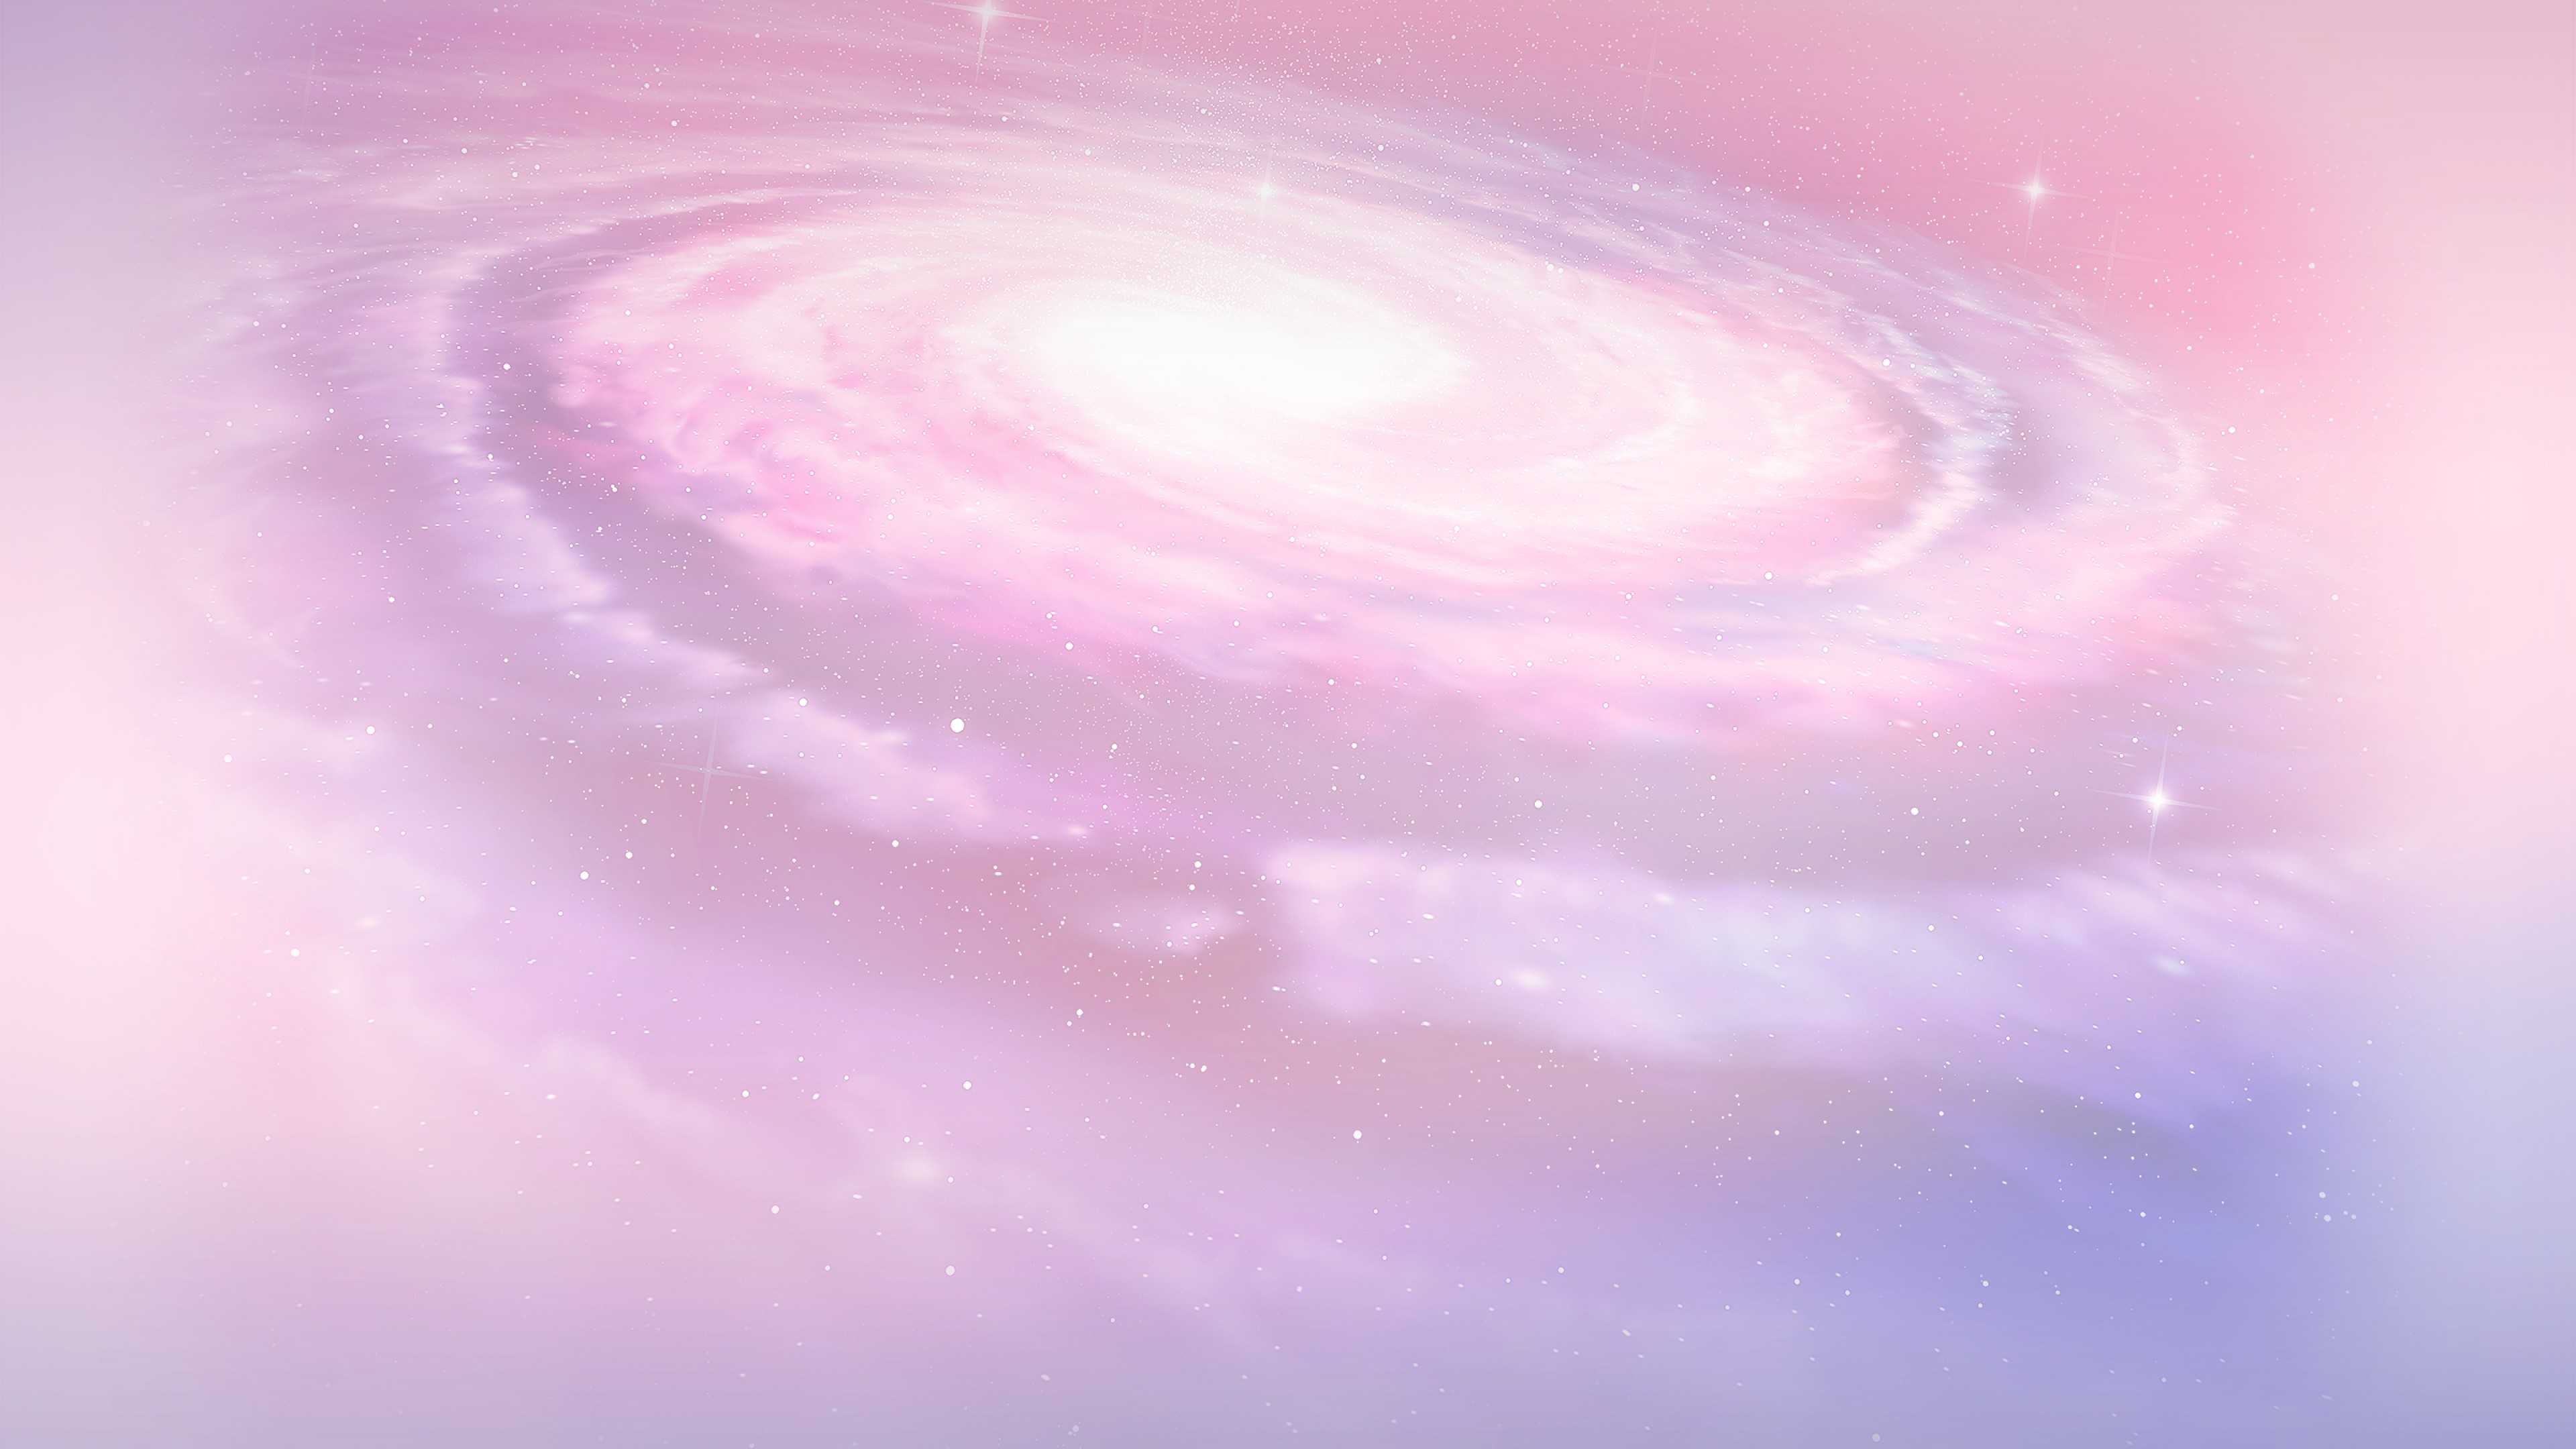 Hình nền galaxy hồng: Không gian luôn là một chủ đề đầy hứa hẹn. Và vào năm 2024, bạn sẽ được đắm mình trong một vũ trụ đầy mê hoặc với hình nền galaxy hồng bắt mắt. Đây là một cách tuyệt vời để trang trí cho chiếc điện thoại mới làm cho nó trông thật đặc biệt và thu hút ánh nhìn từ những người xung quanh.